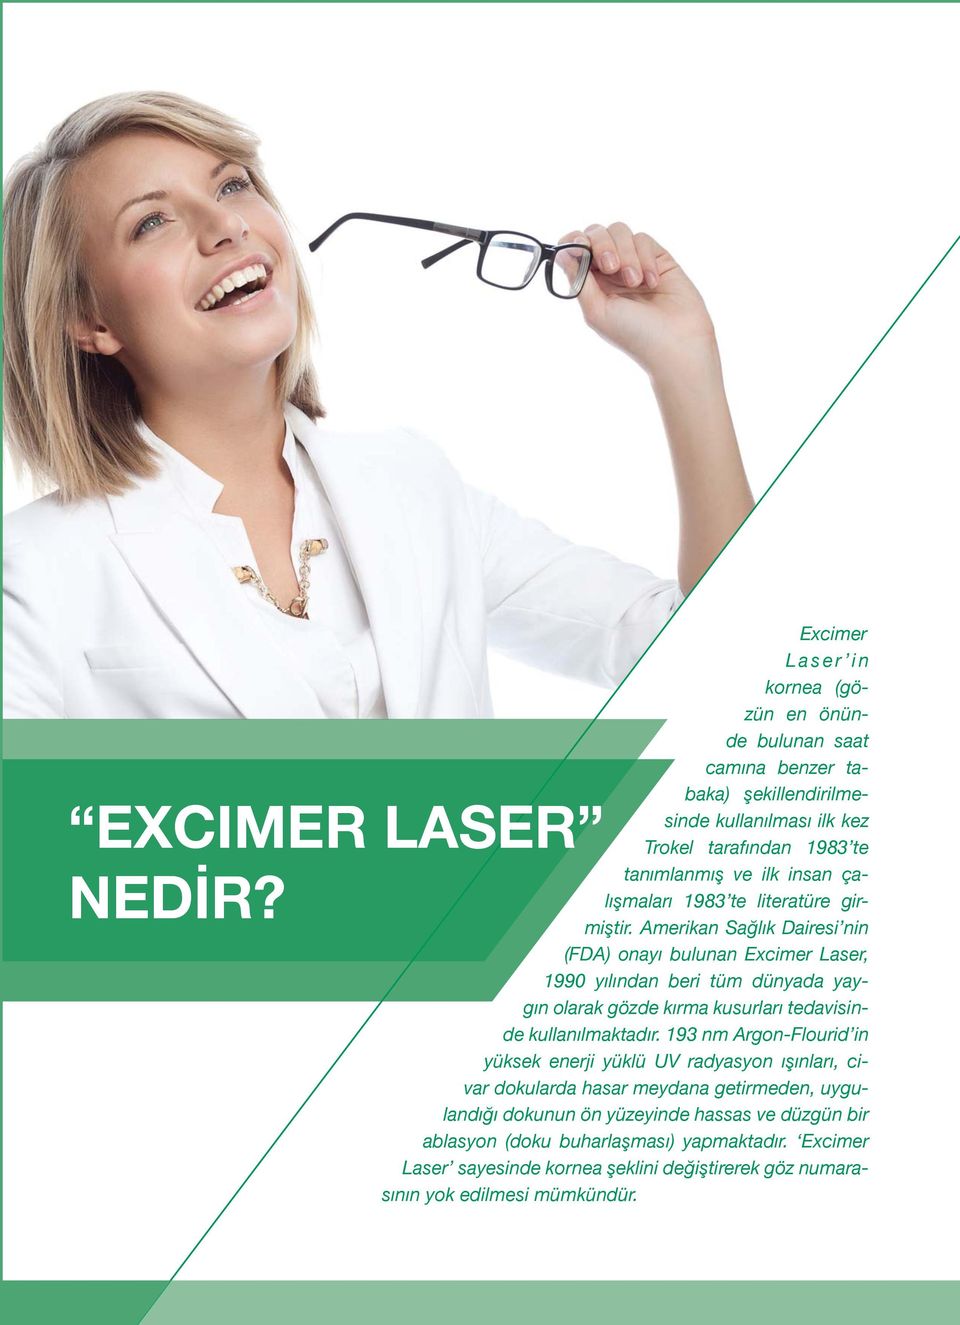 Amerikan Sağlık Dairesi nin (FDA) onayı bulunan Excimer Laser, 1990 yılından beri tüm dünyada yaygın olarak gözde kırma kusurları tedavisinde kullanılmaktadır.